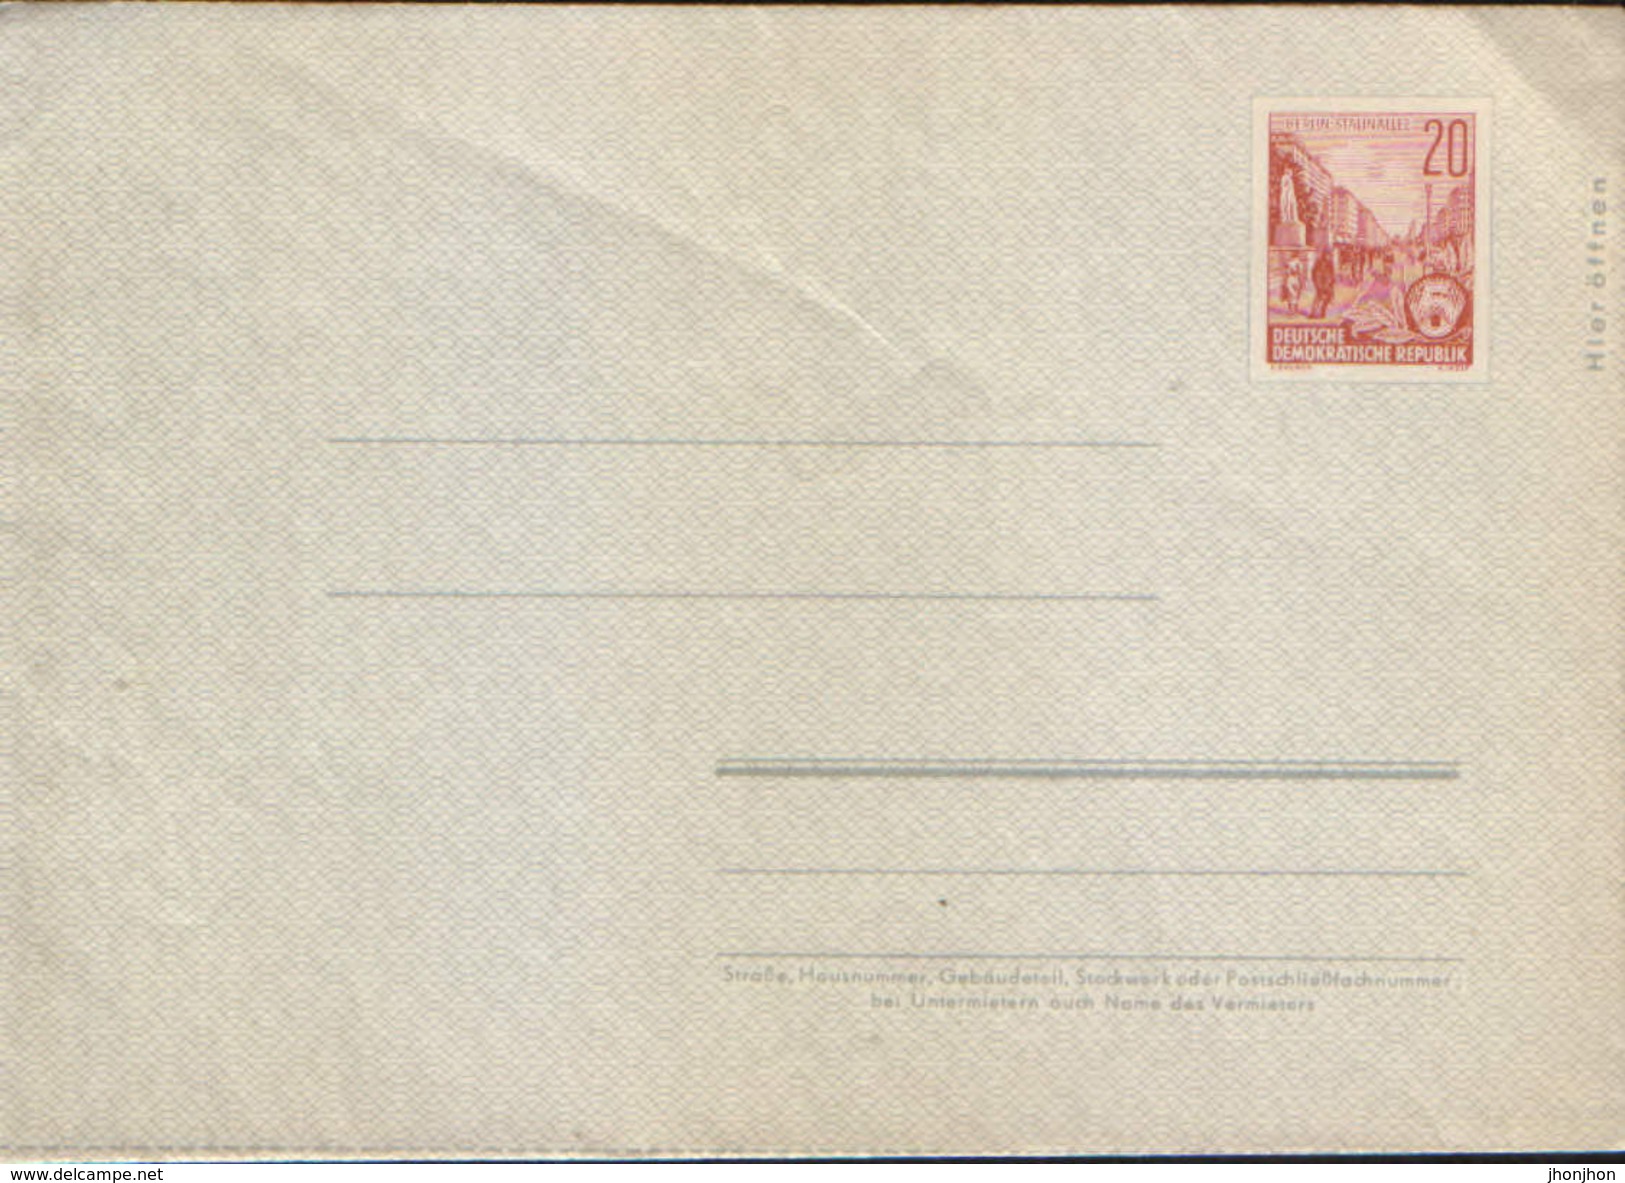 Deutschland/DDR - Postal Stationery Cover Private, Unused - PU 411 - Privé Briefomslagen - Ongebruikt